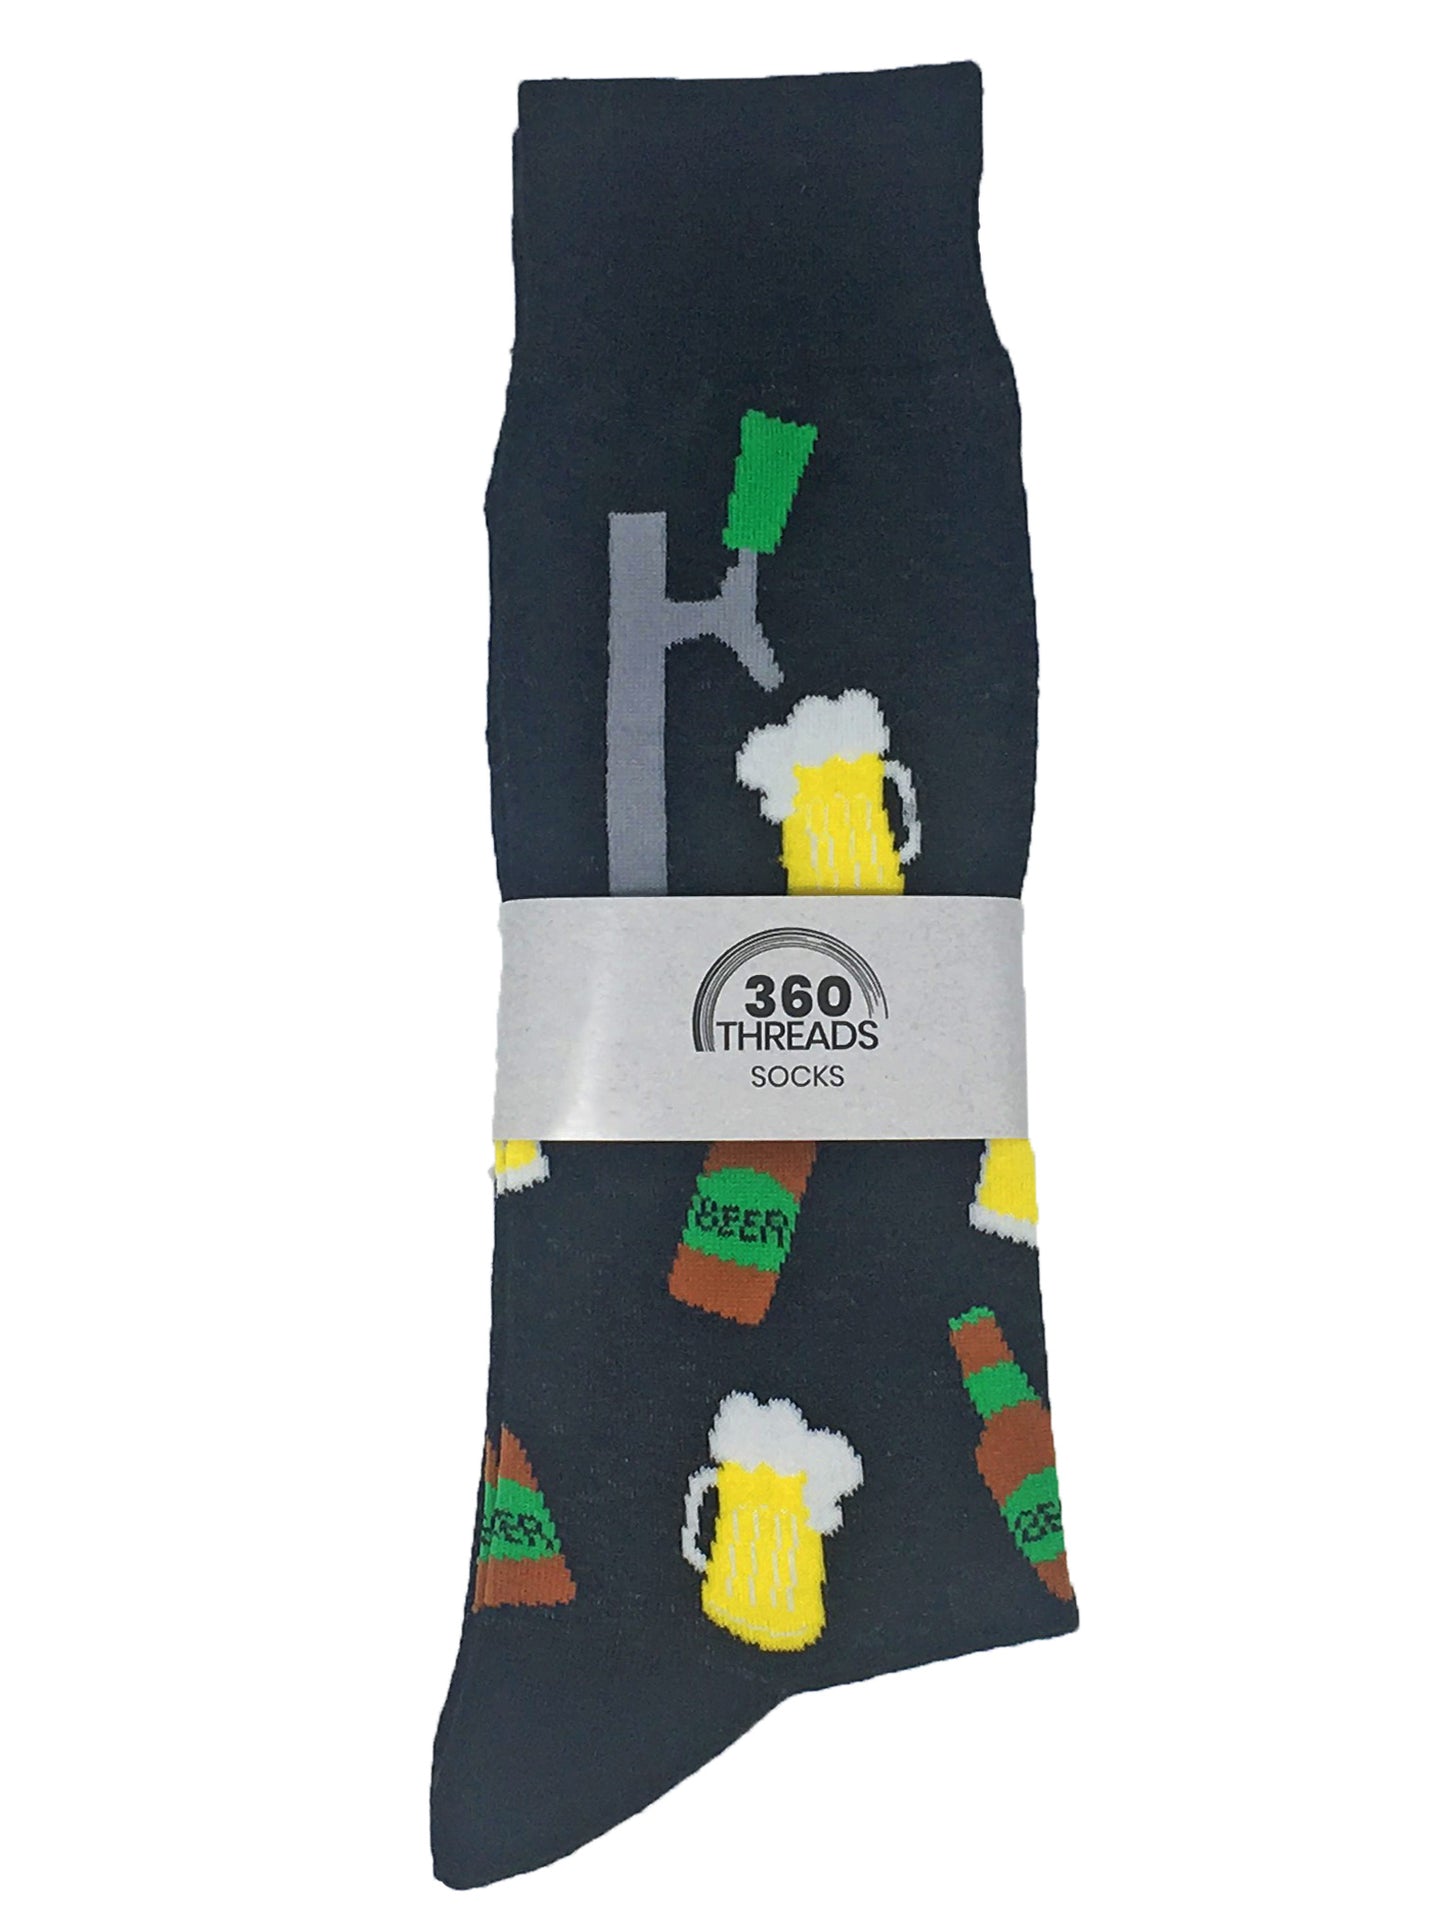 Men's St Patricks Day Irish Luck and Beer Tap w/ Mugs Socks 2-Pairs Black Gray